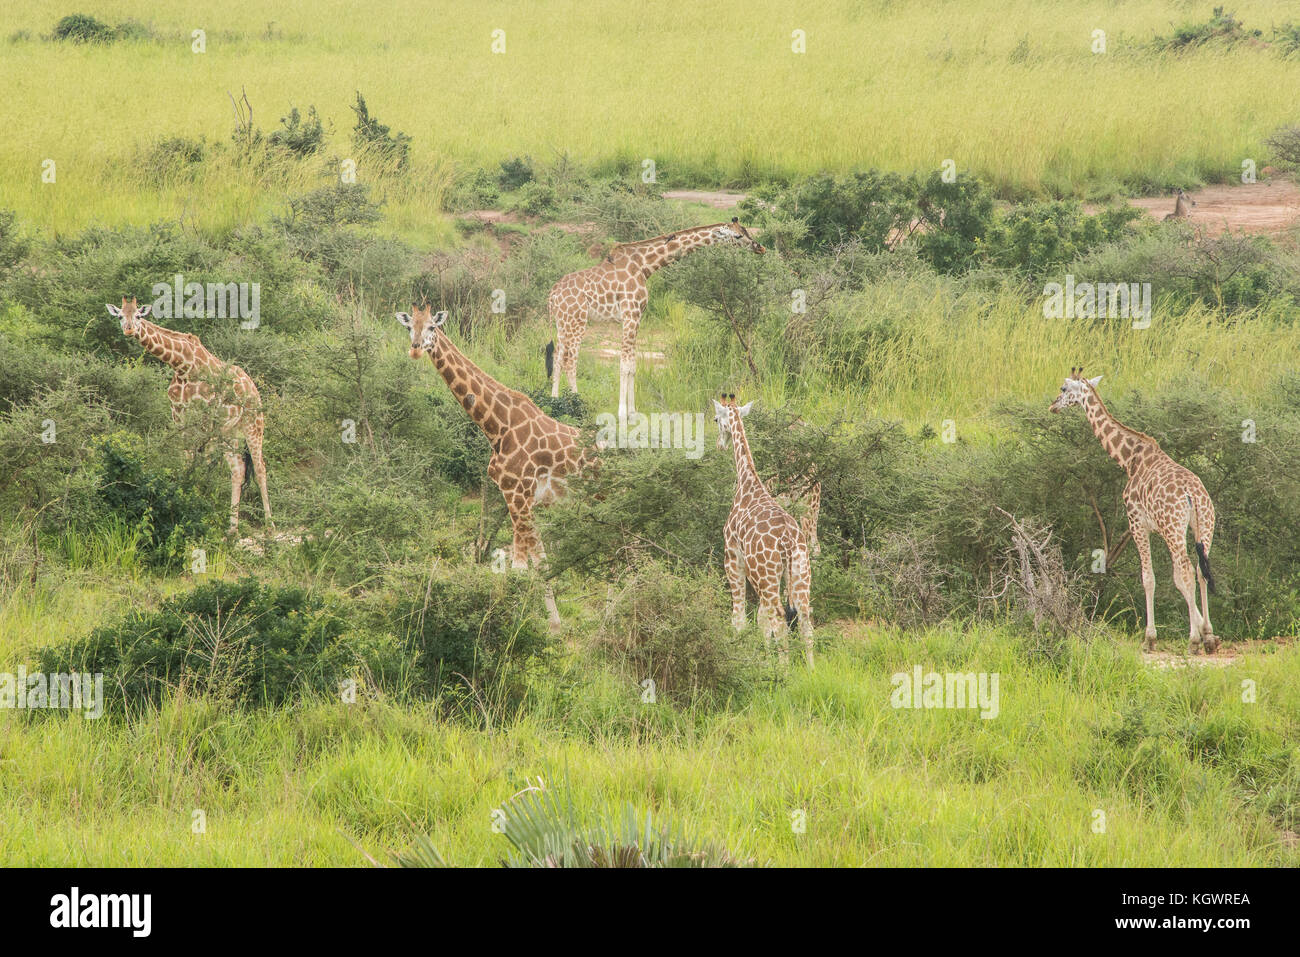 Group of Endangered Rothschild's giraffes feeding on trees in Murchison Falls National Park, Uganda. Stock Photo